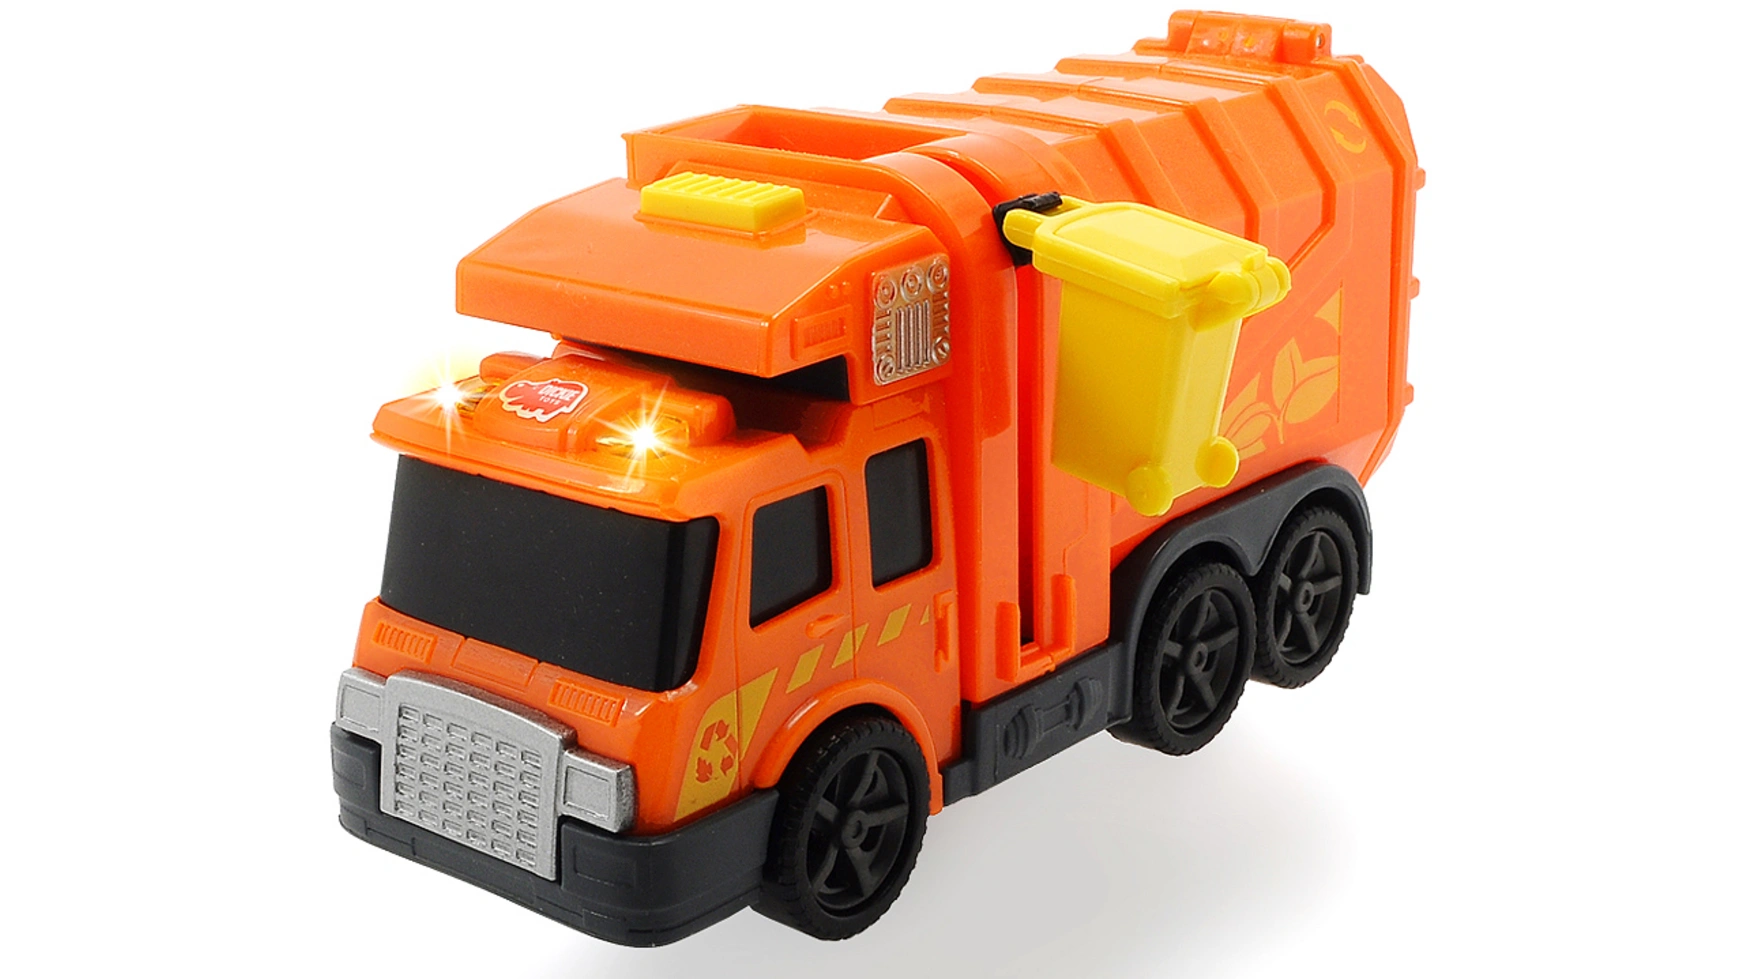 Dickie Toys Городской уборщик грузовик dickie toys 3726002 35 см бежевый желтый